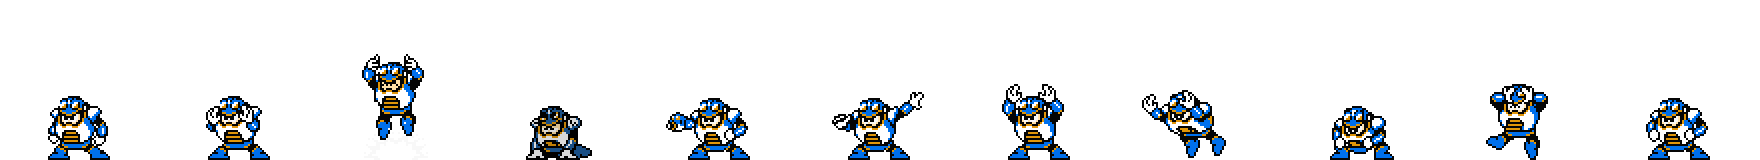 Toad Man (Blueberry Alt) | Base Sprite Left